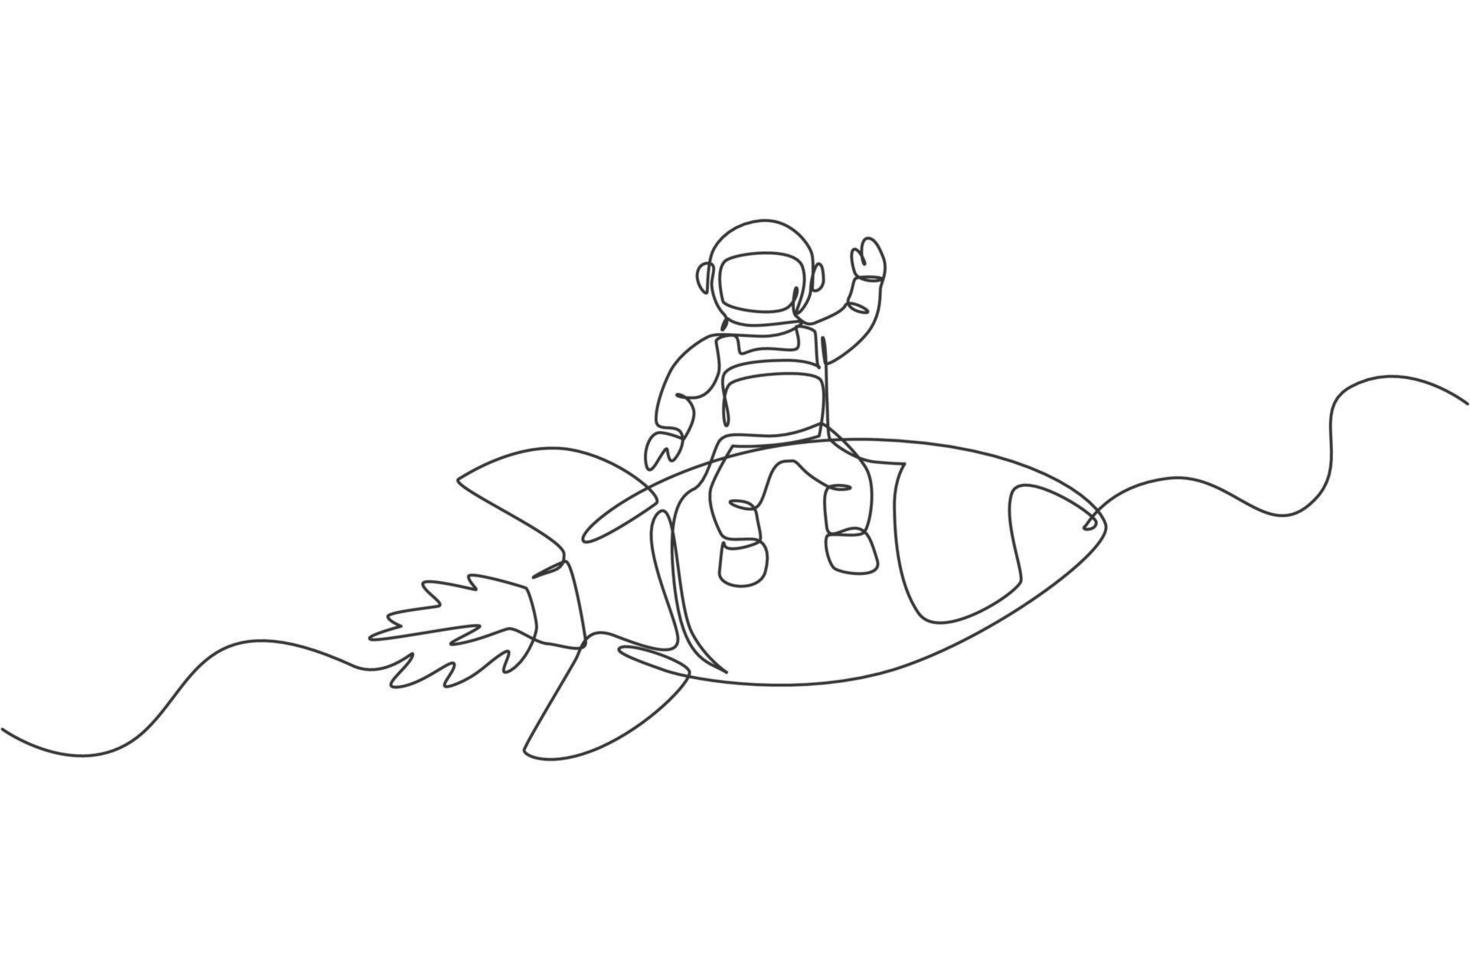 un disegno a tratteggio continuo dell'astronauta astronauta che agita la mano e si siede su un razzo volante. esplorazione del cosmonauta del concetto di spazio esterno. illustrazione vettoriale di disegno grafico di disegno grafico a linea singola dinamica